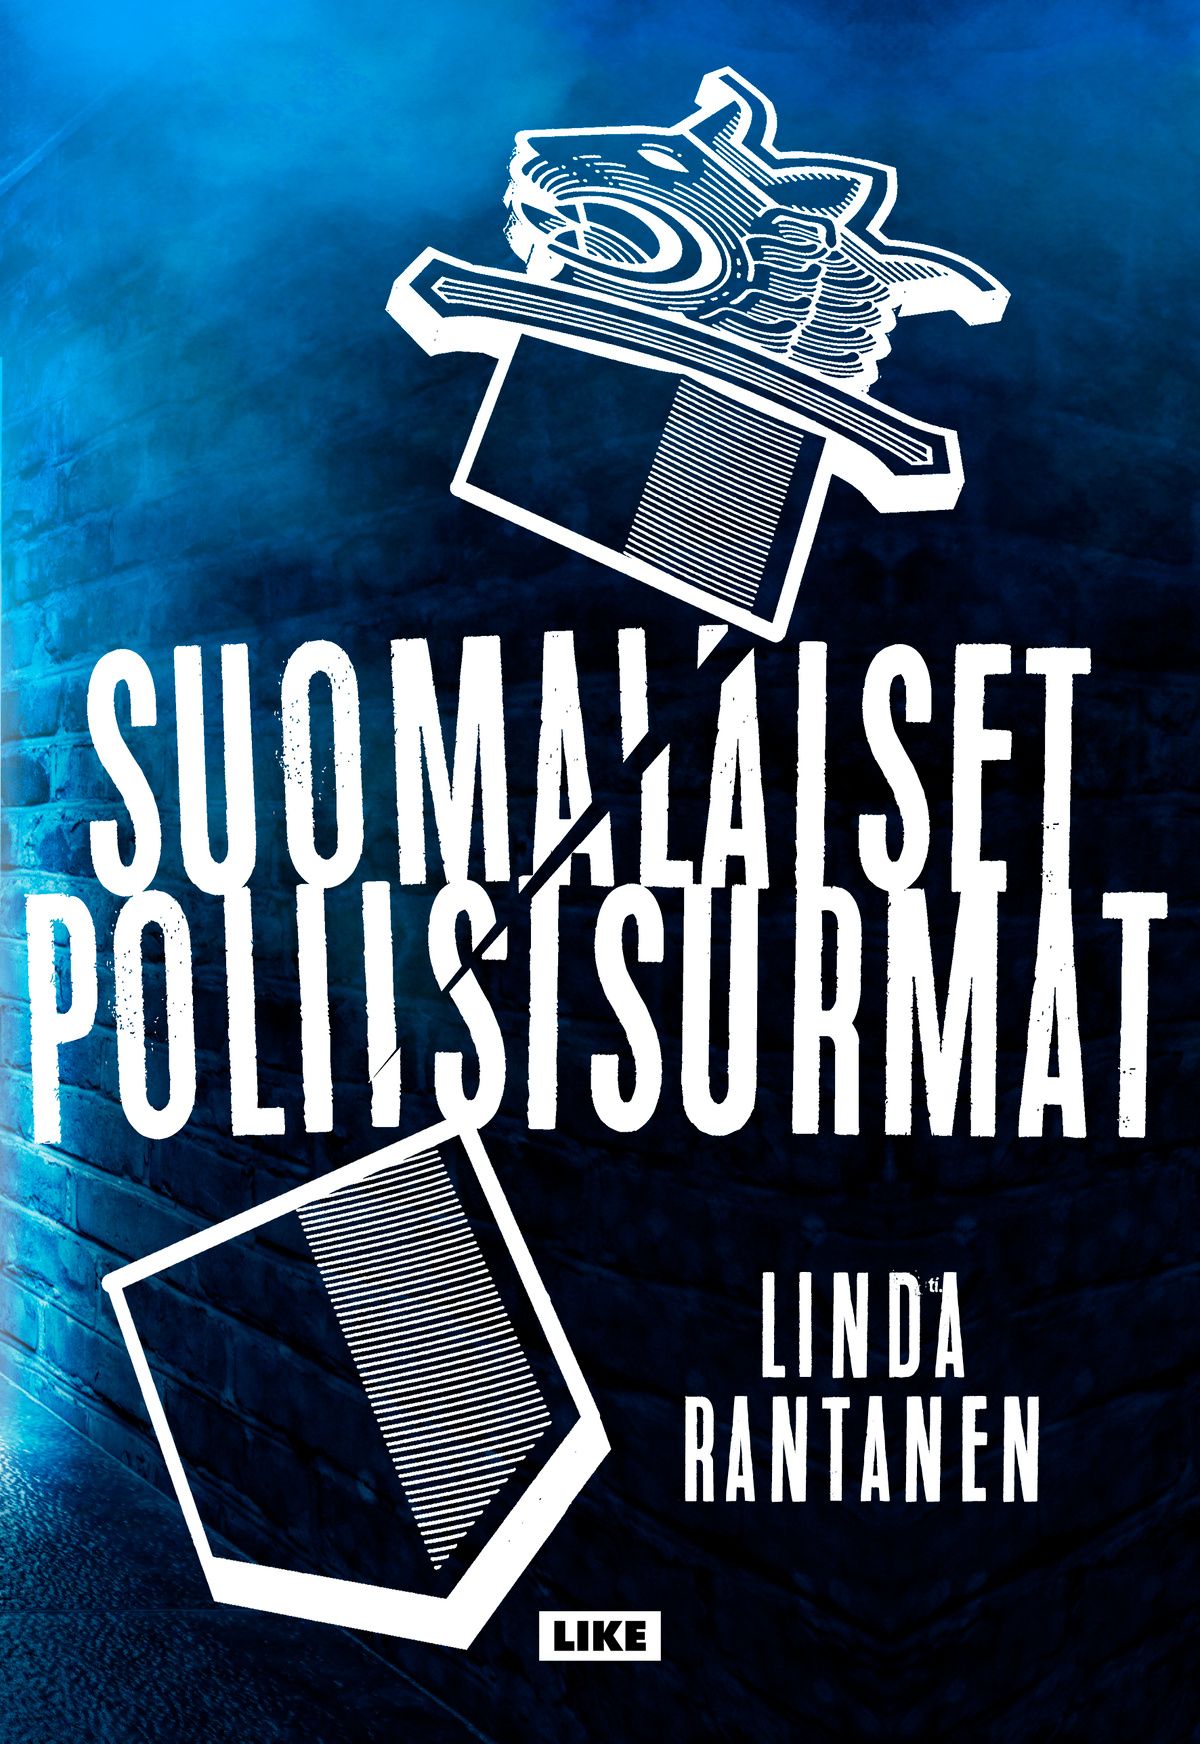 Linda Rantanen : Suomalaiset poliisisurmat